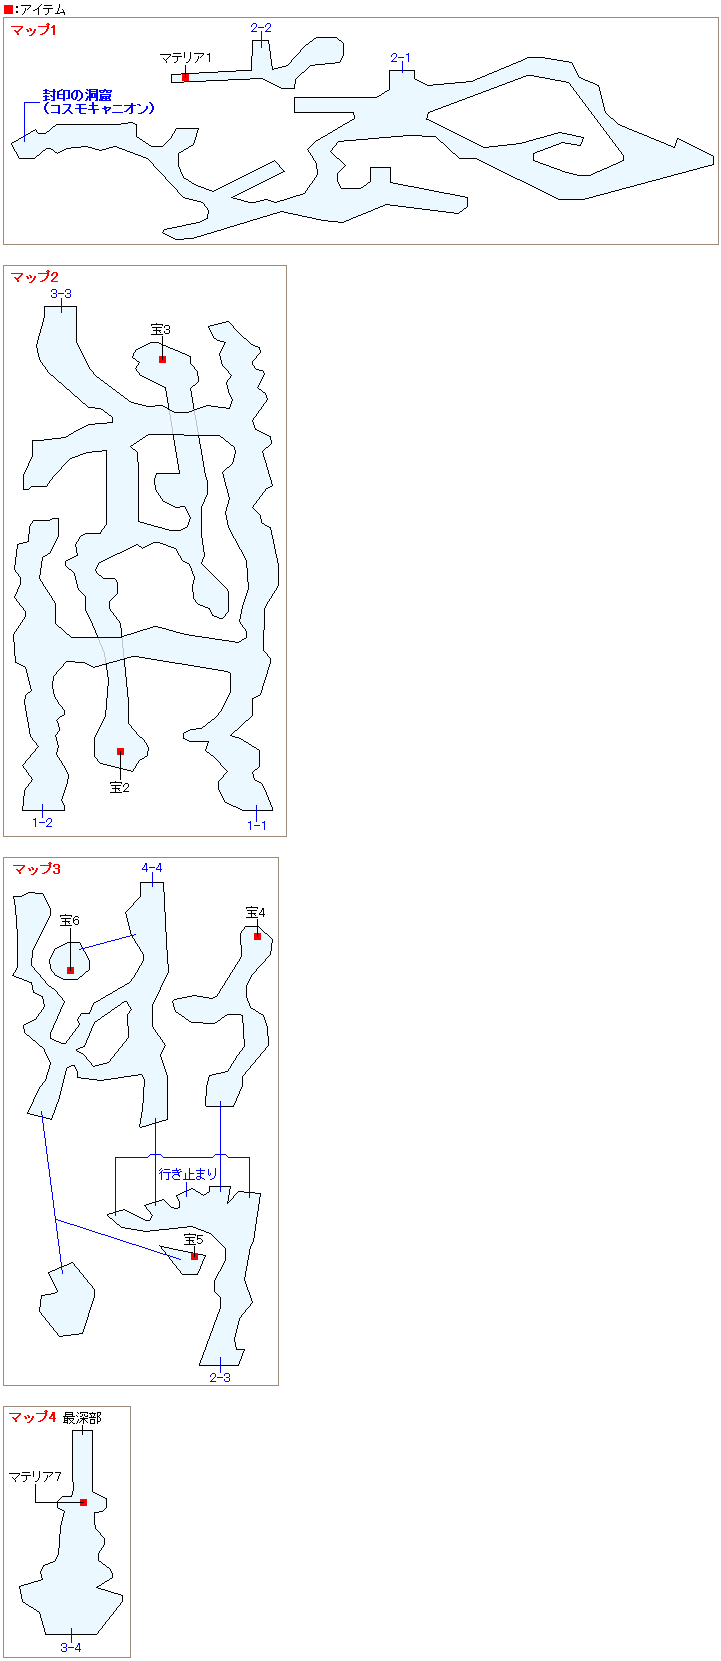 オリジナル版ff7 ギ族の洞窟のマップデータ